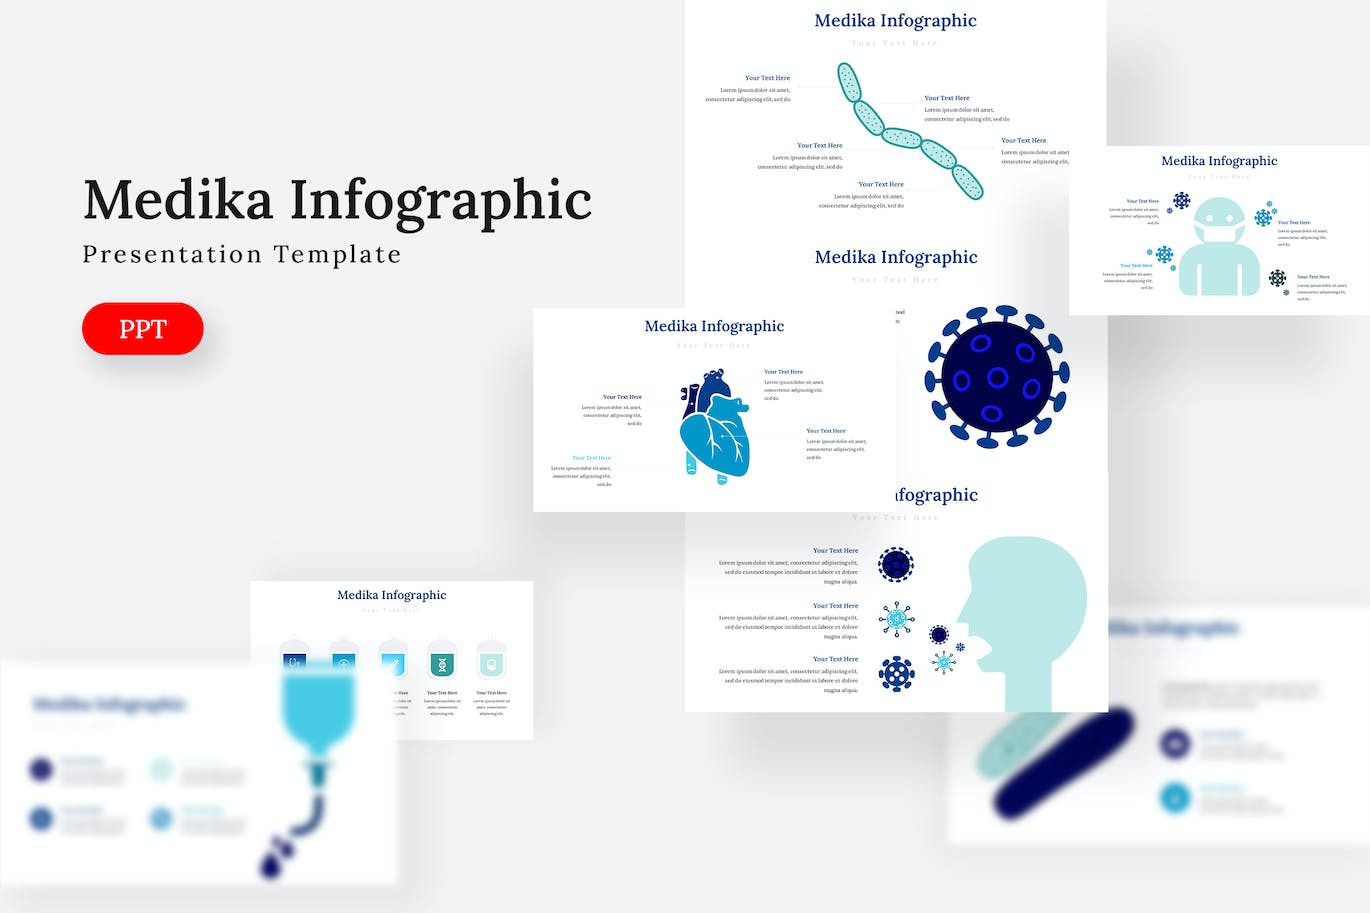 医疗信息图表PPT设计模板 Medika Infographic – Powerpoint Template 幻灯图表 第1张